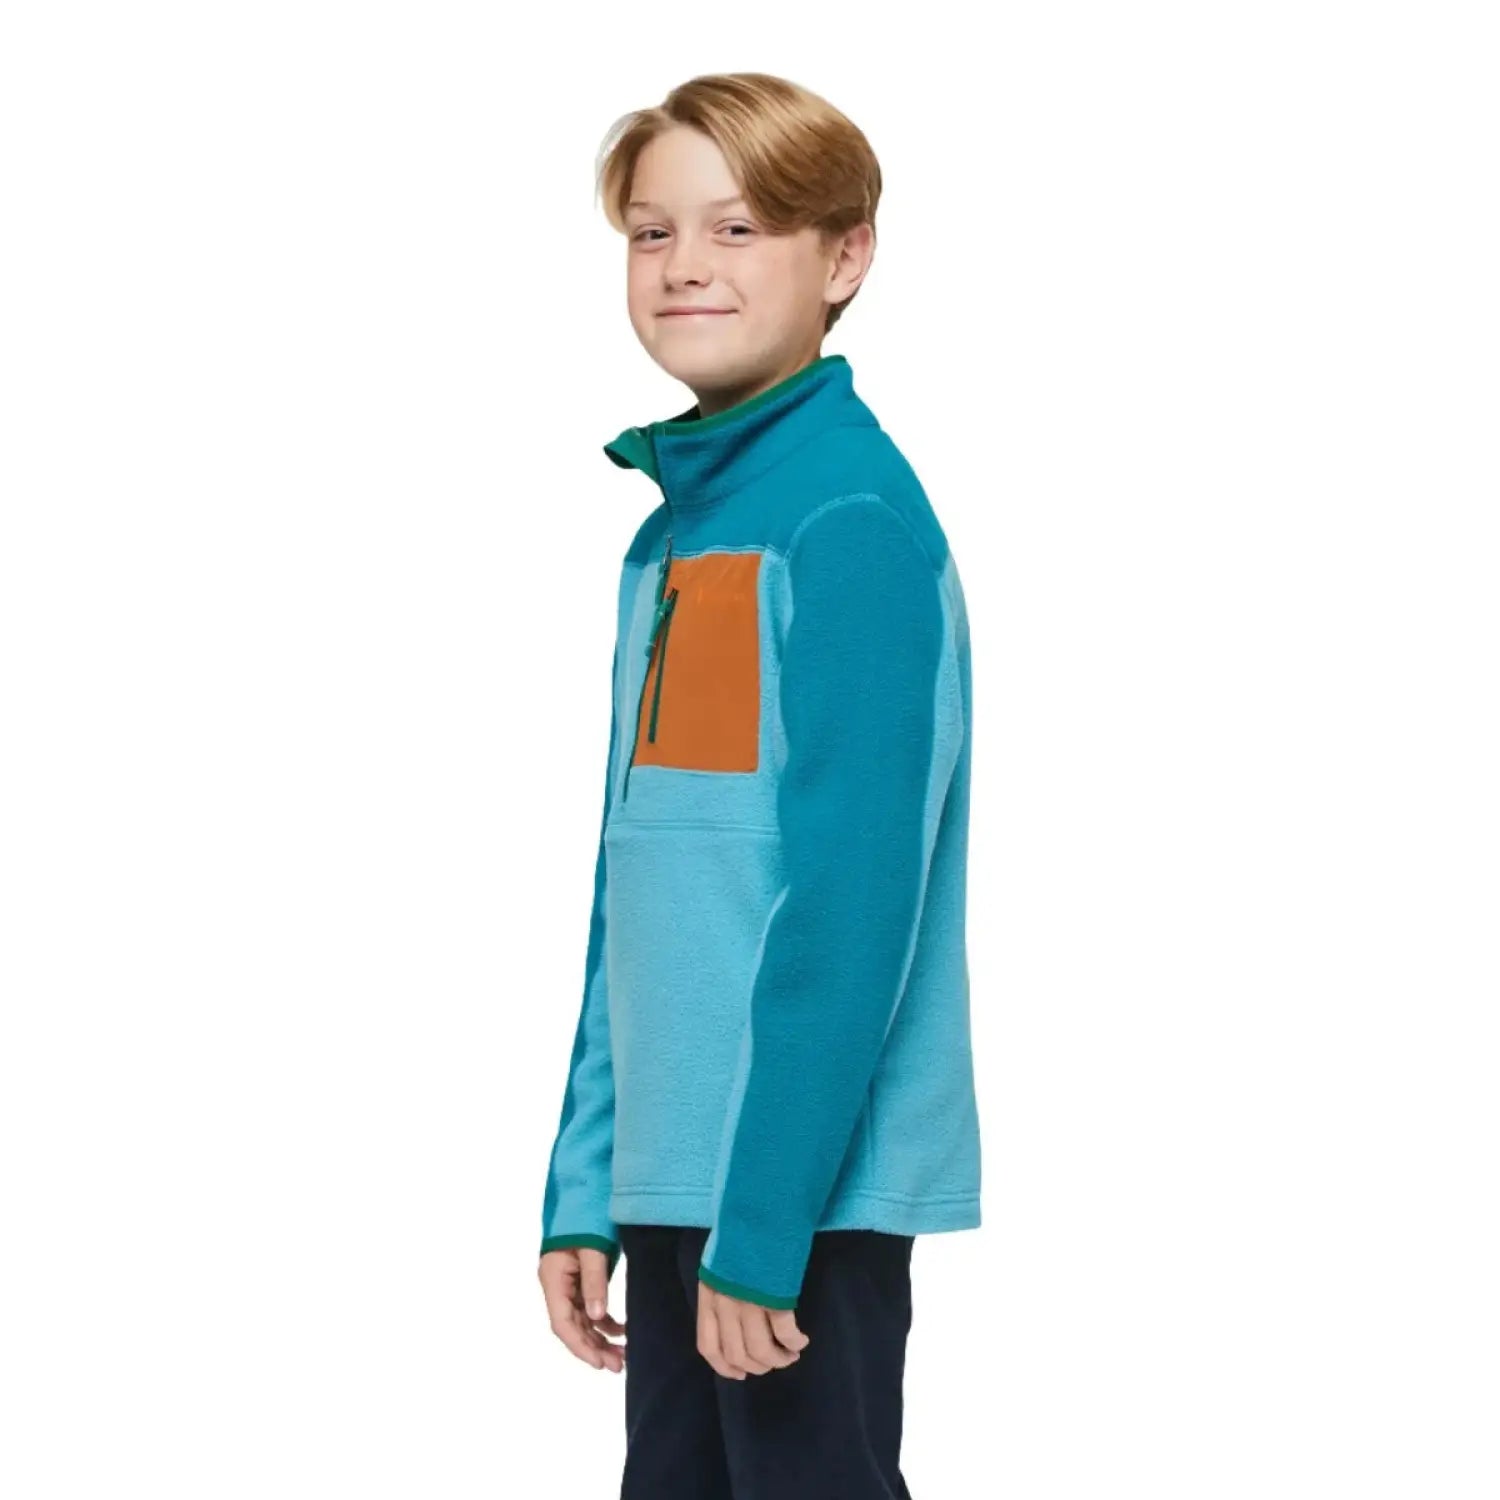 Cotopaxi K's Abrazo Half-Zip Fleece Jacket, Gulf Poolside, side view on model 